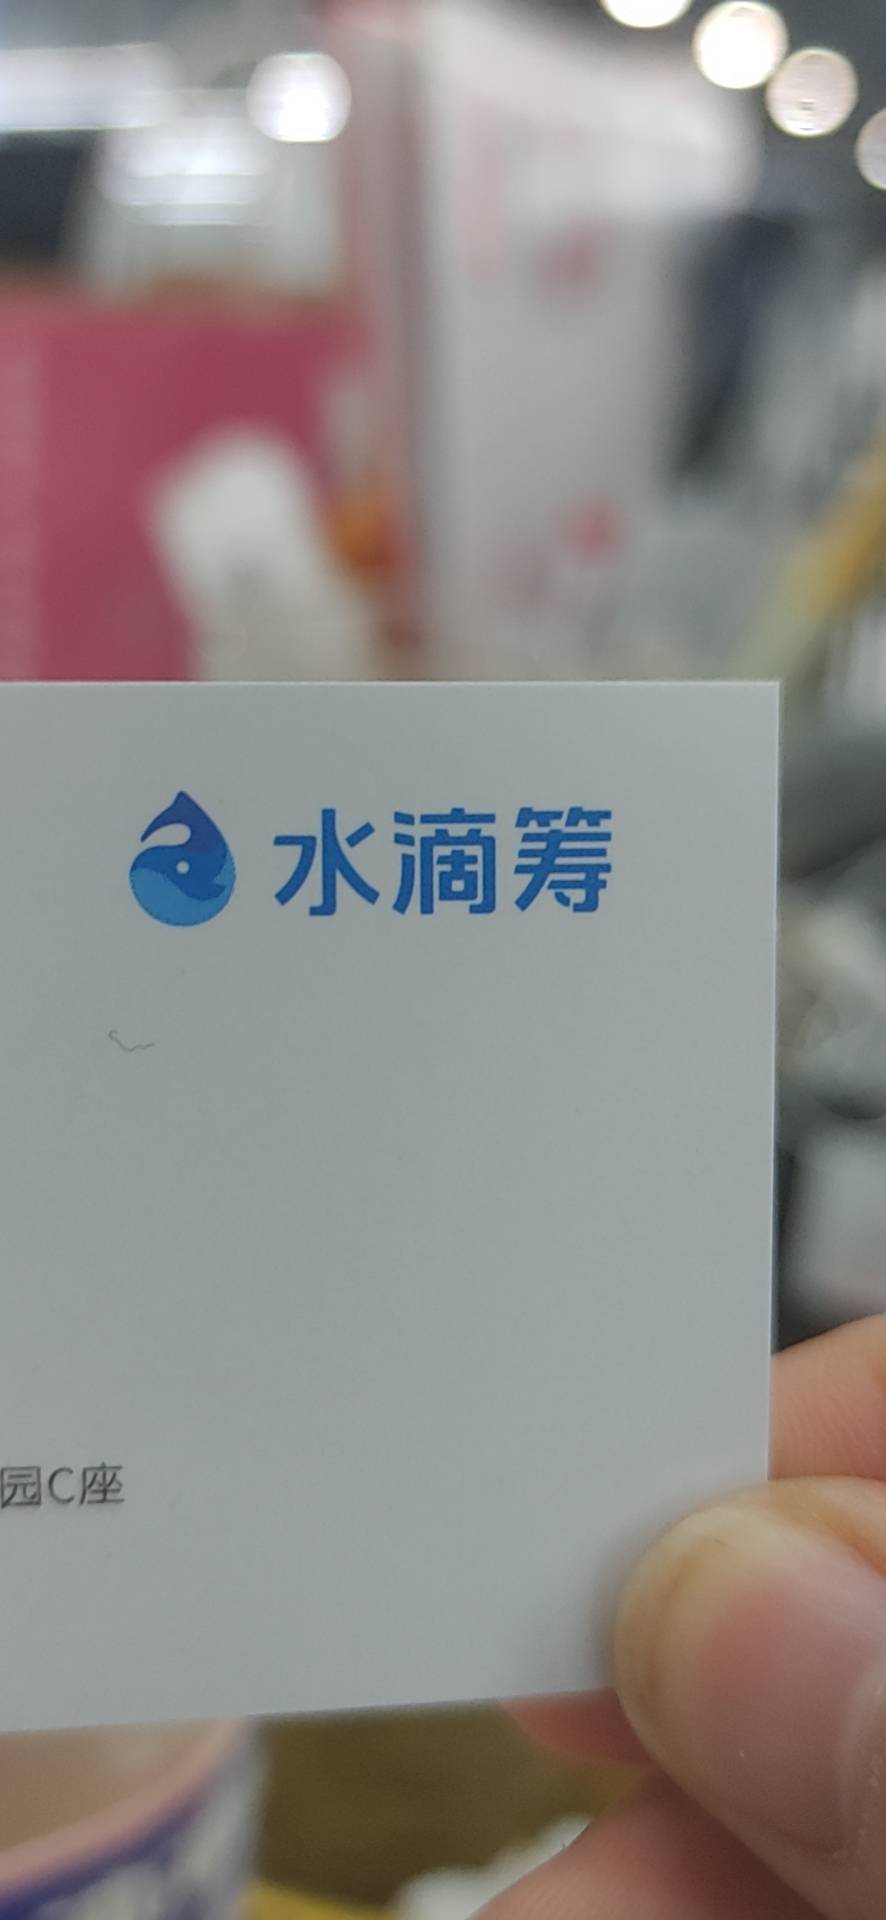 北京水滴互保科技有限公司